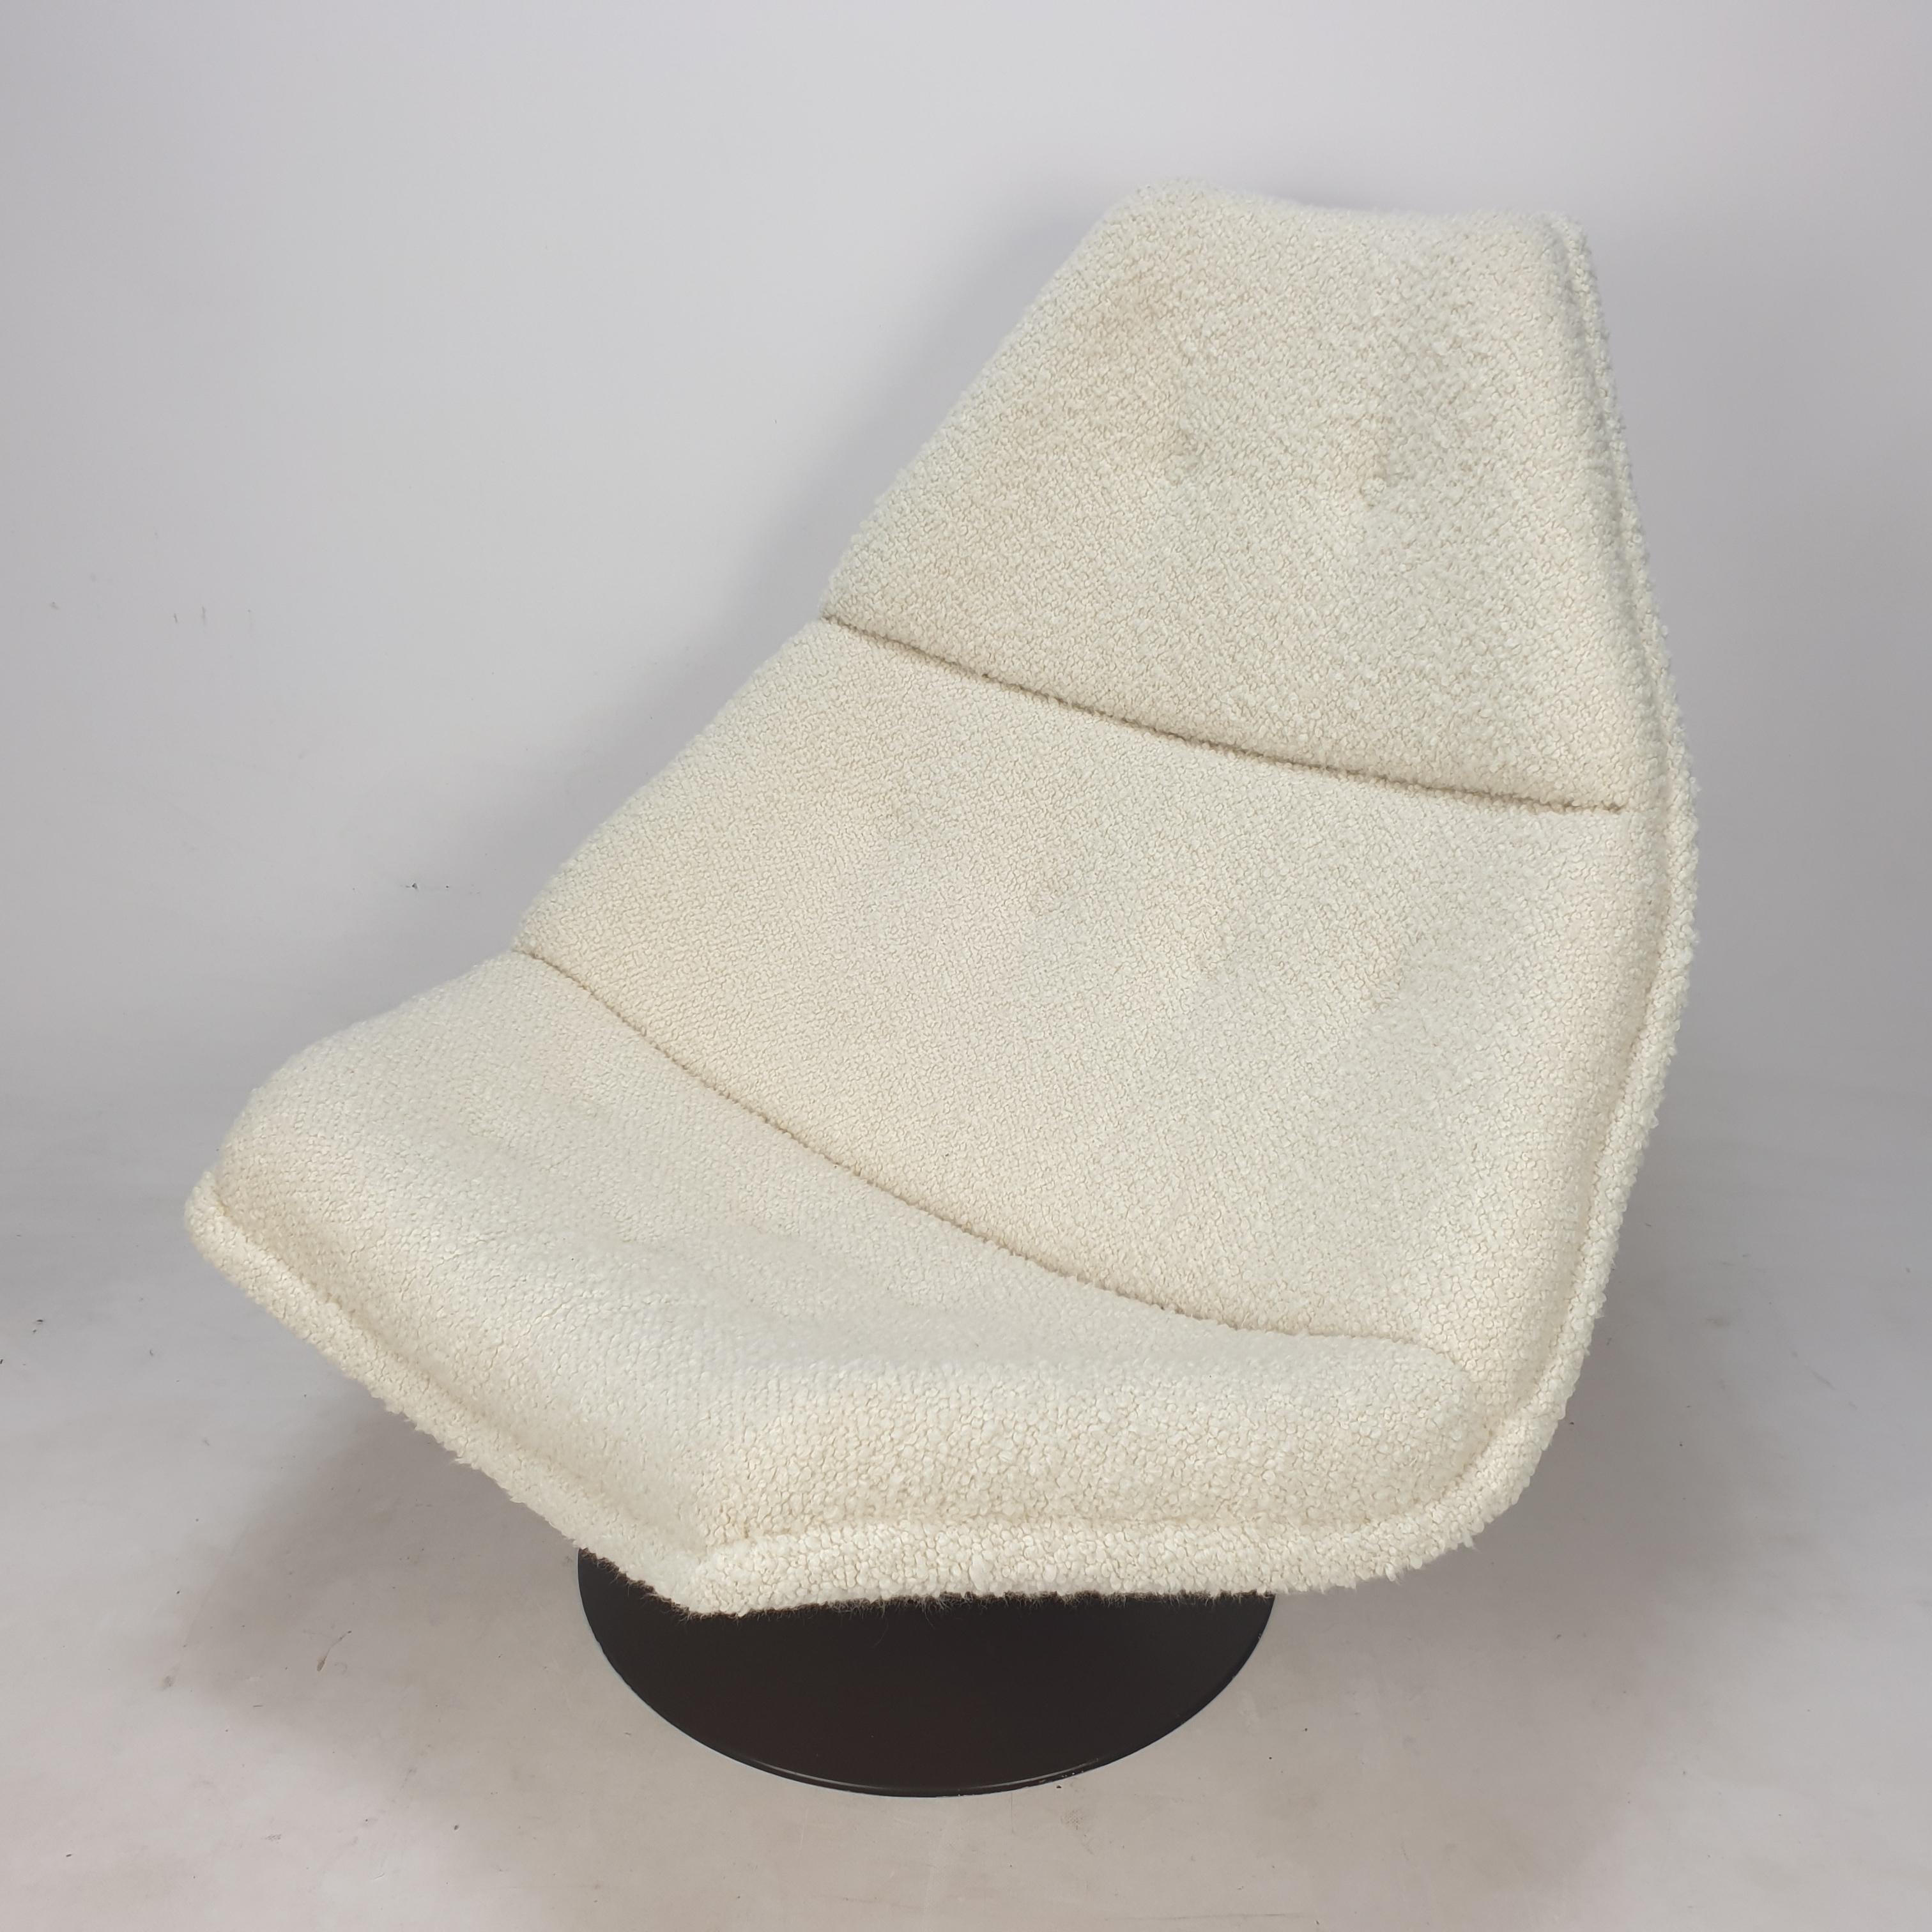 Sehr bequemer Artifort-Sessel. 
Entworfen von dem berühmten englischen Designer Geoffrey Harcourt in den 60er Jahren. 

Der Stuhl wurde gerade mit neuem Stoff und neuem Schaumstoff restauriert.
Er ist mit sehr weichem italienischem Bouclé-Stoff